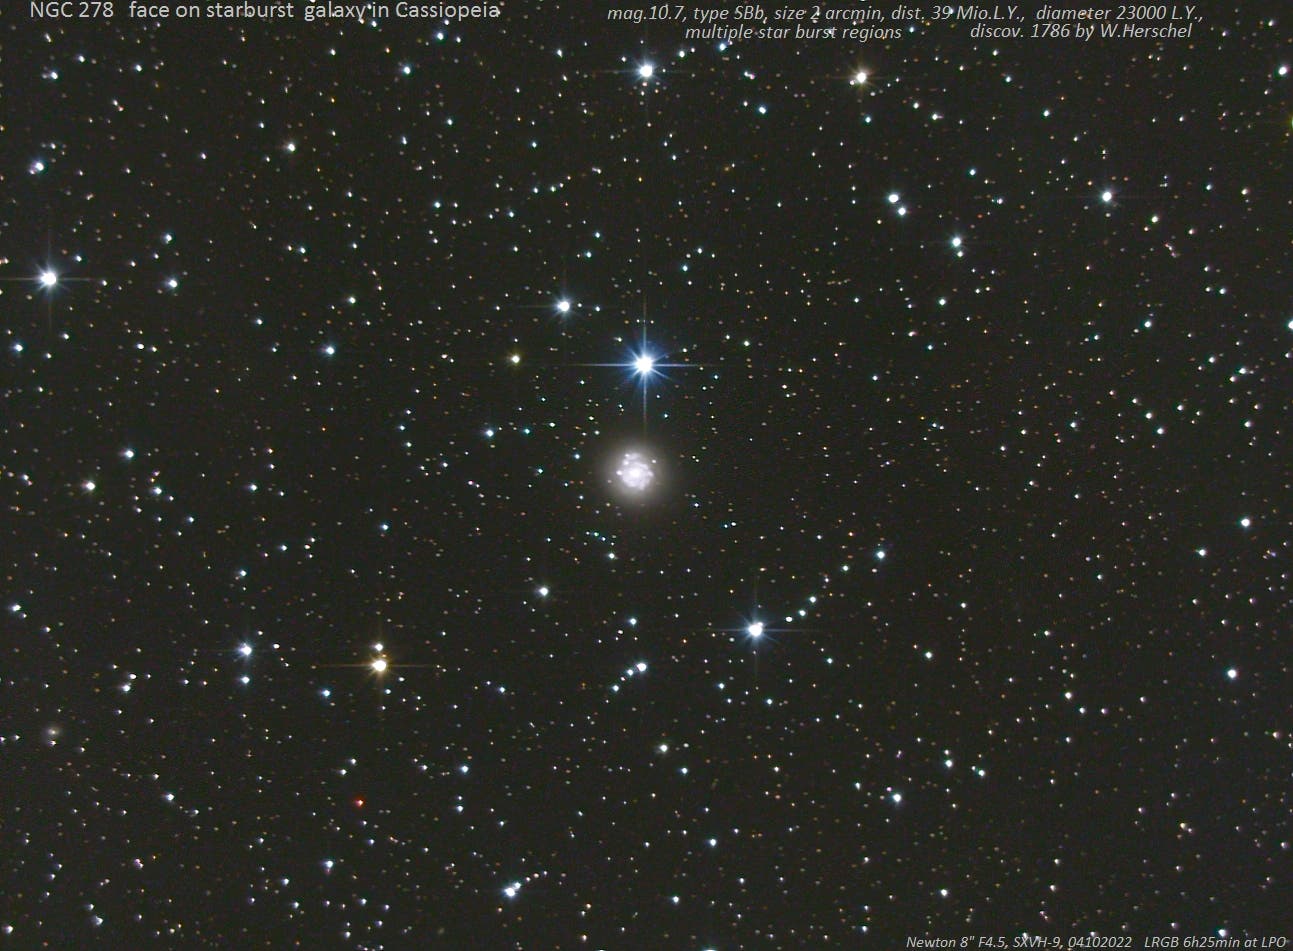 NGC 278 - Starburst-Galaxie in der Kassiopeia (1)